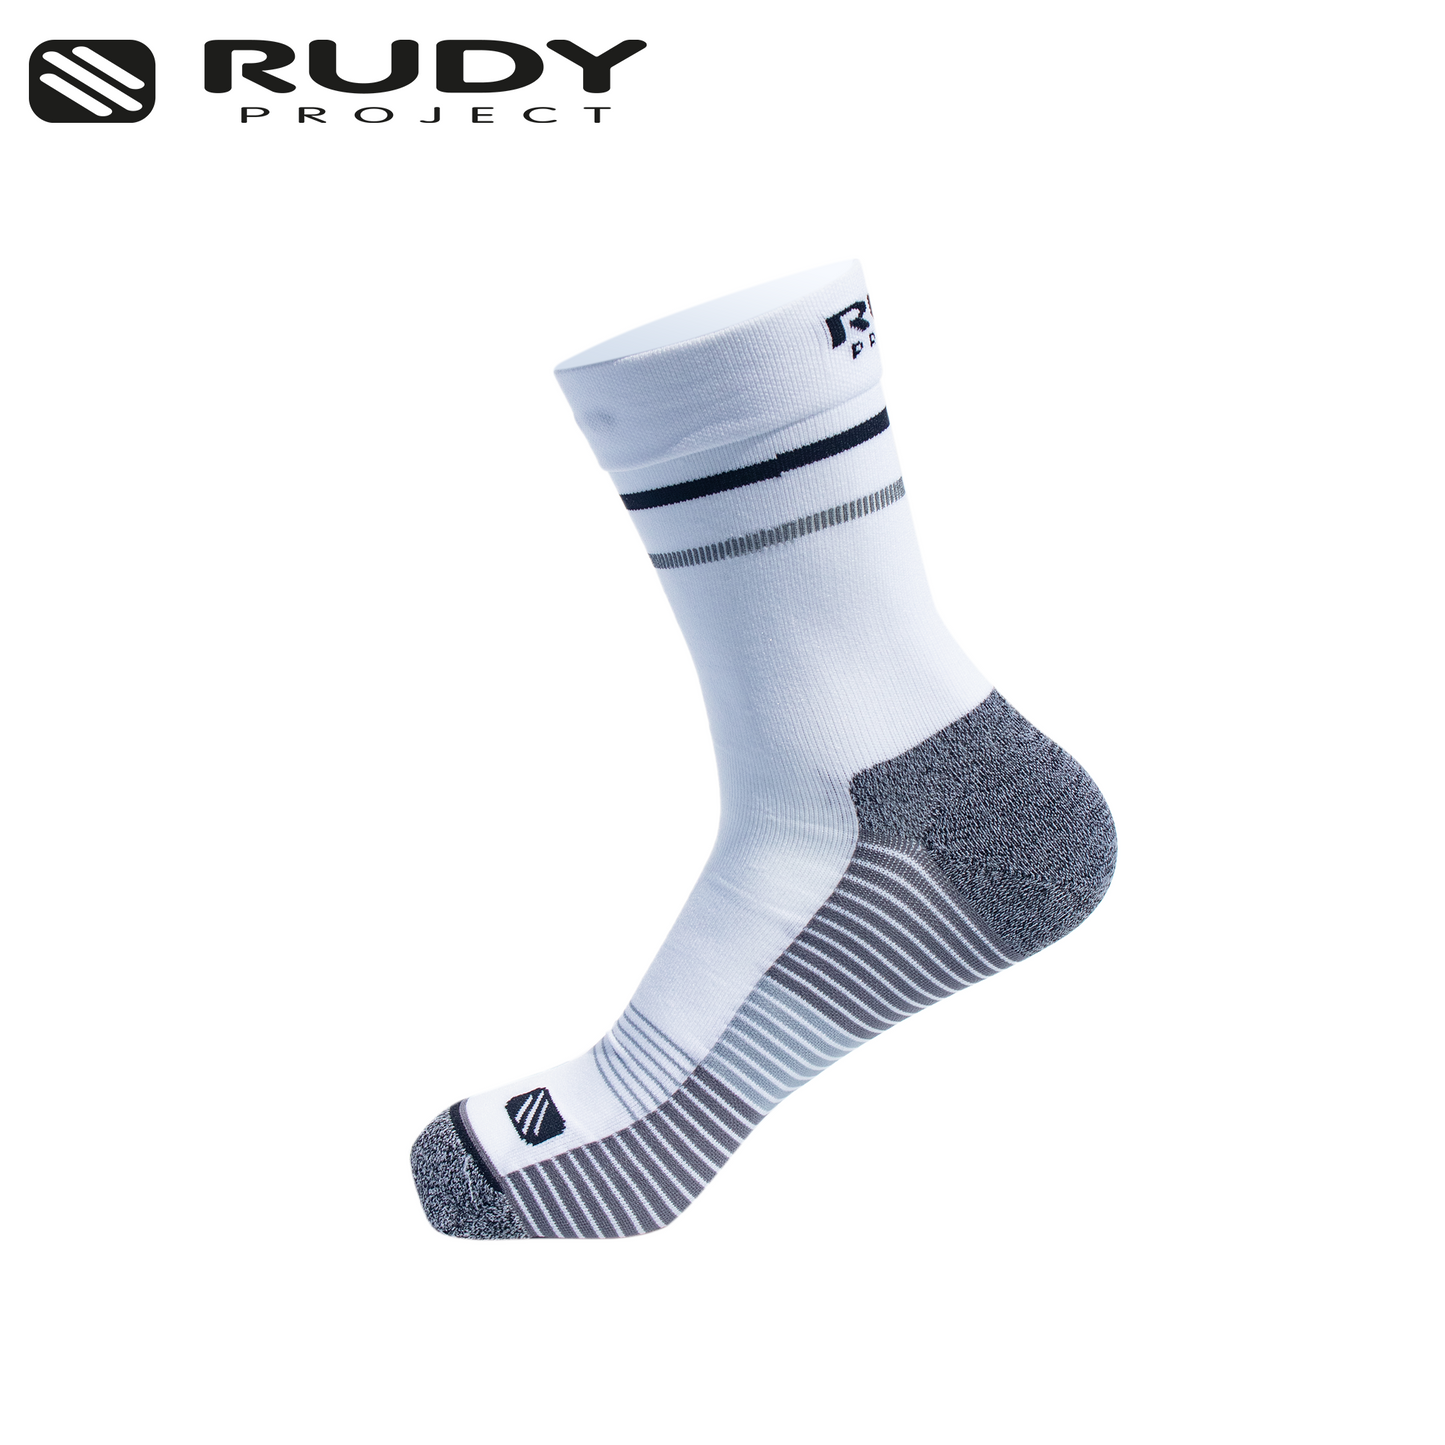 Rudy Project Medium Cut Socks in White & Grey